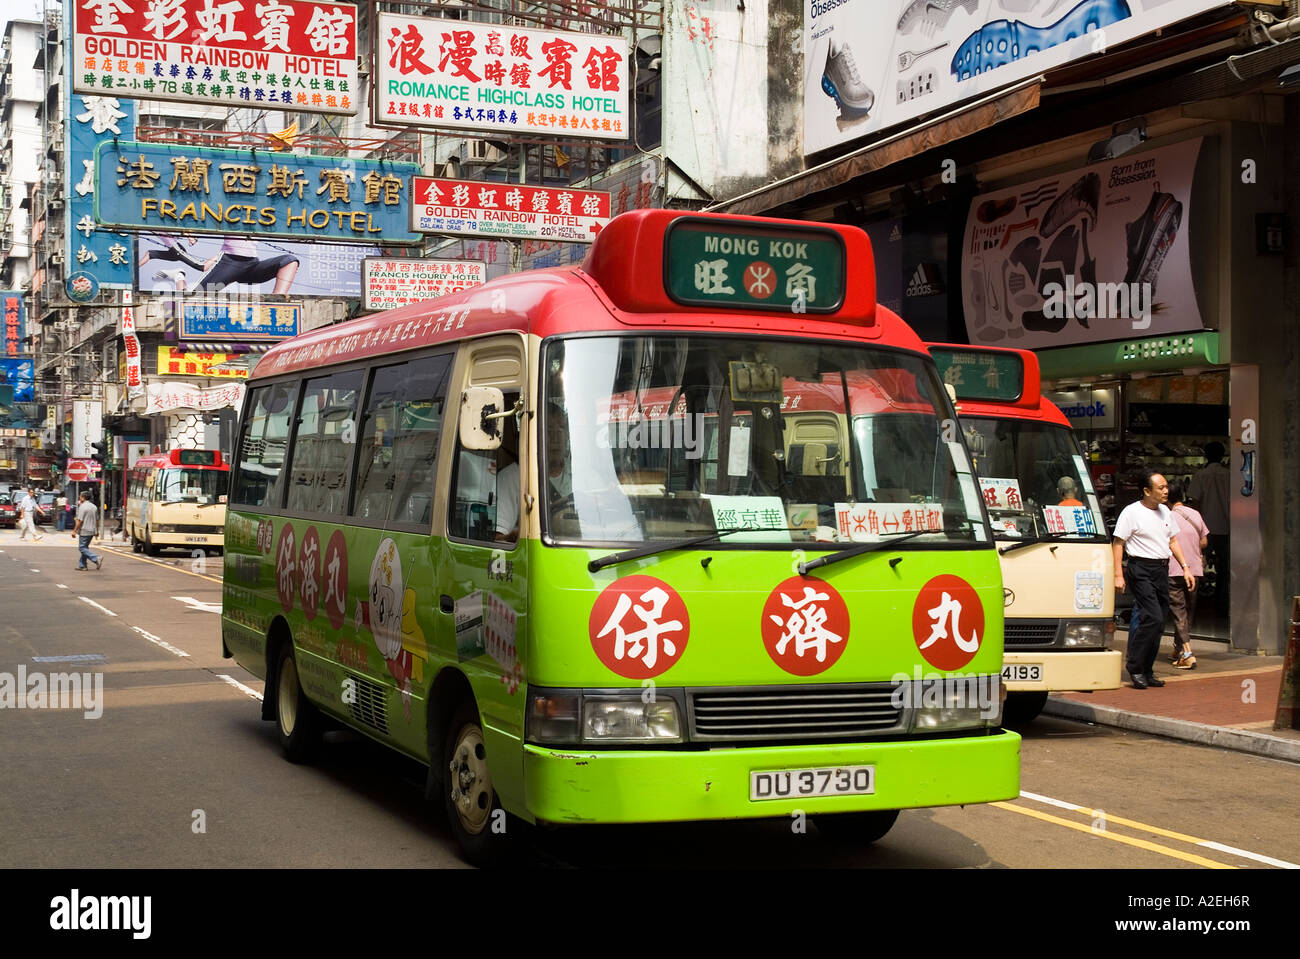 dh Red Öffentlicher Lichtbus MONG KOK HONGKONG Nichtterminiert Minibus-Service mit Werbung Busse Transport mongkok Straße Stockfoto